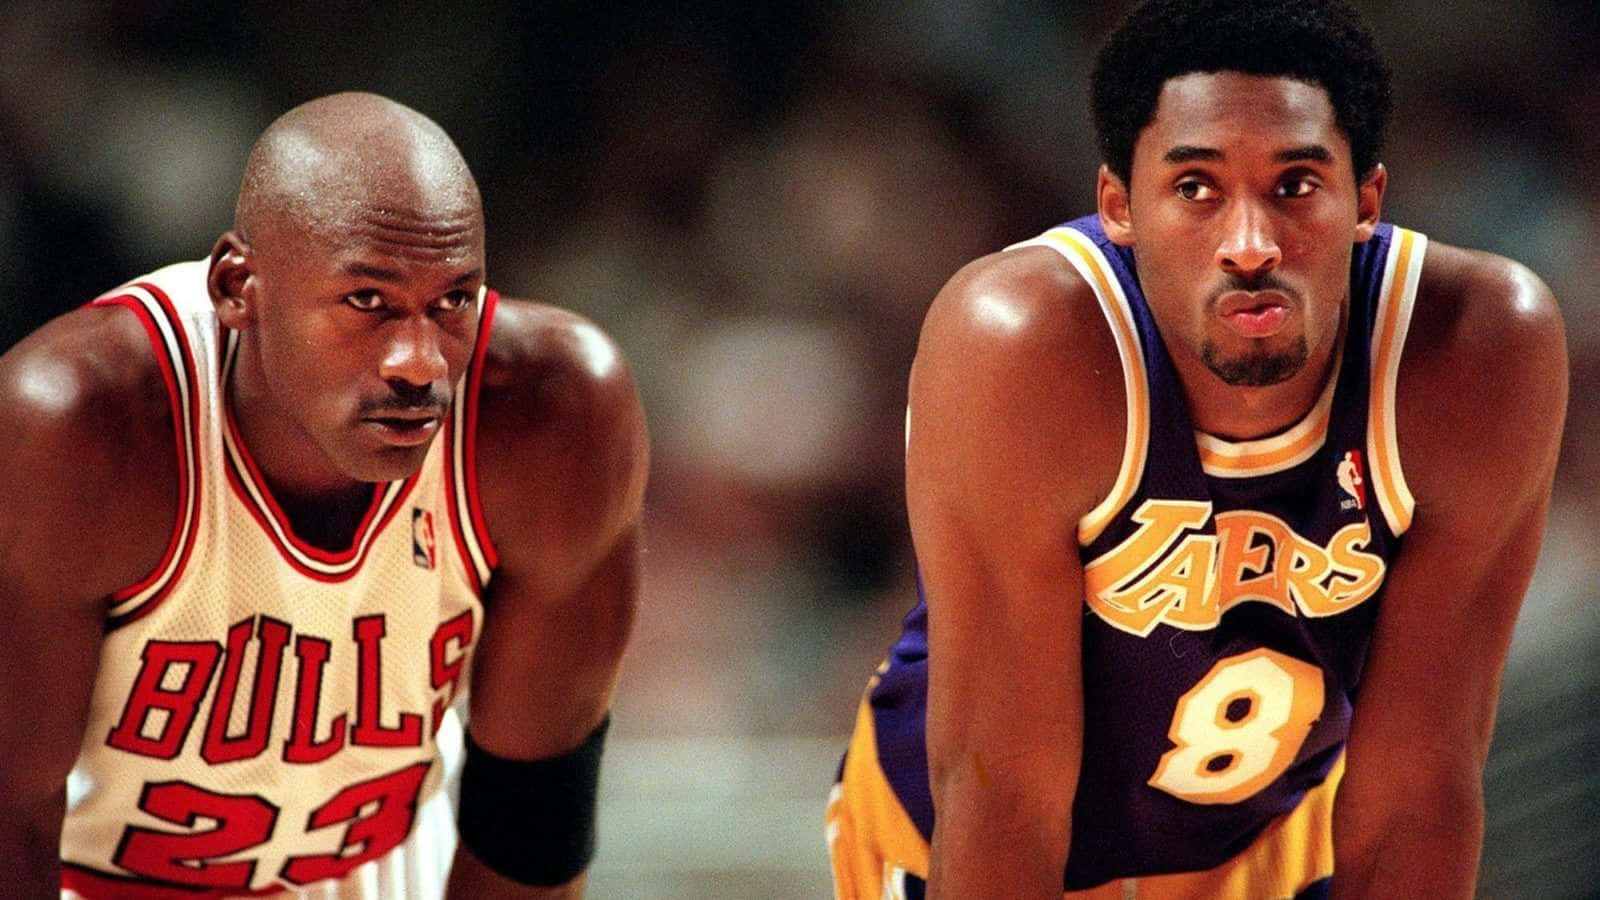 100+] Kobe Bryant And Michael Jordan Wallpapers